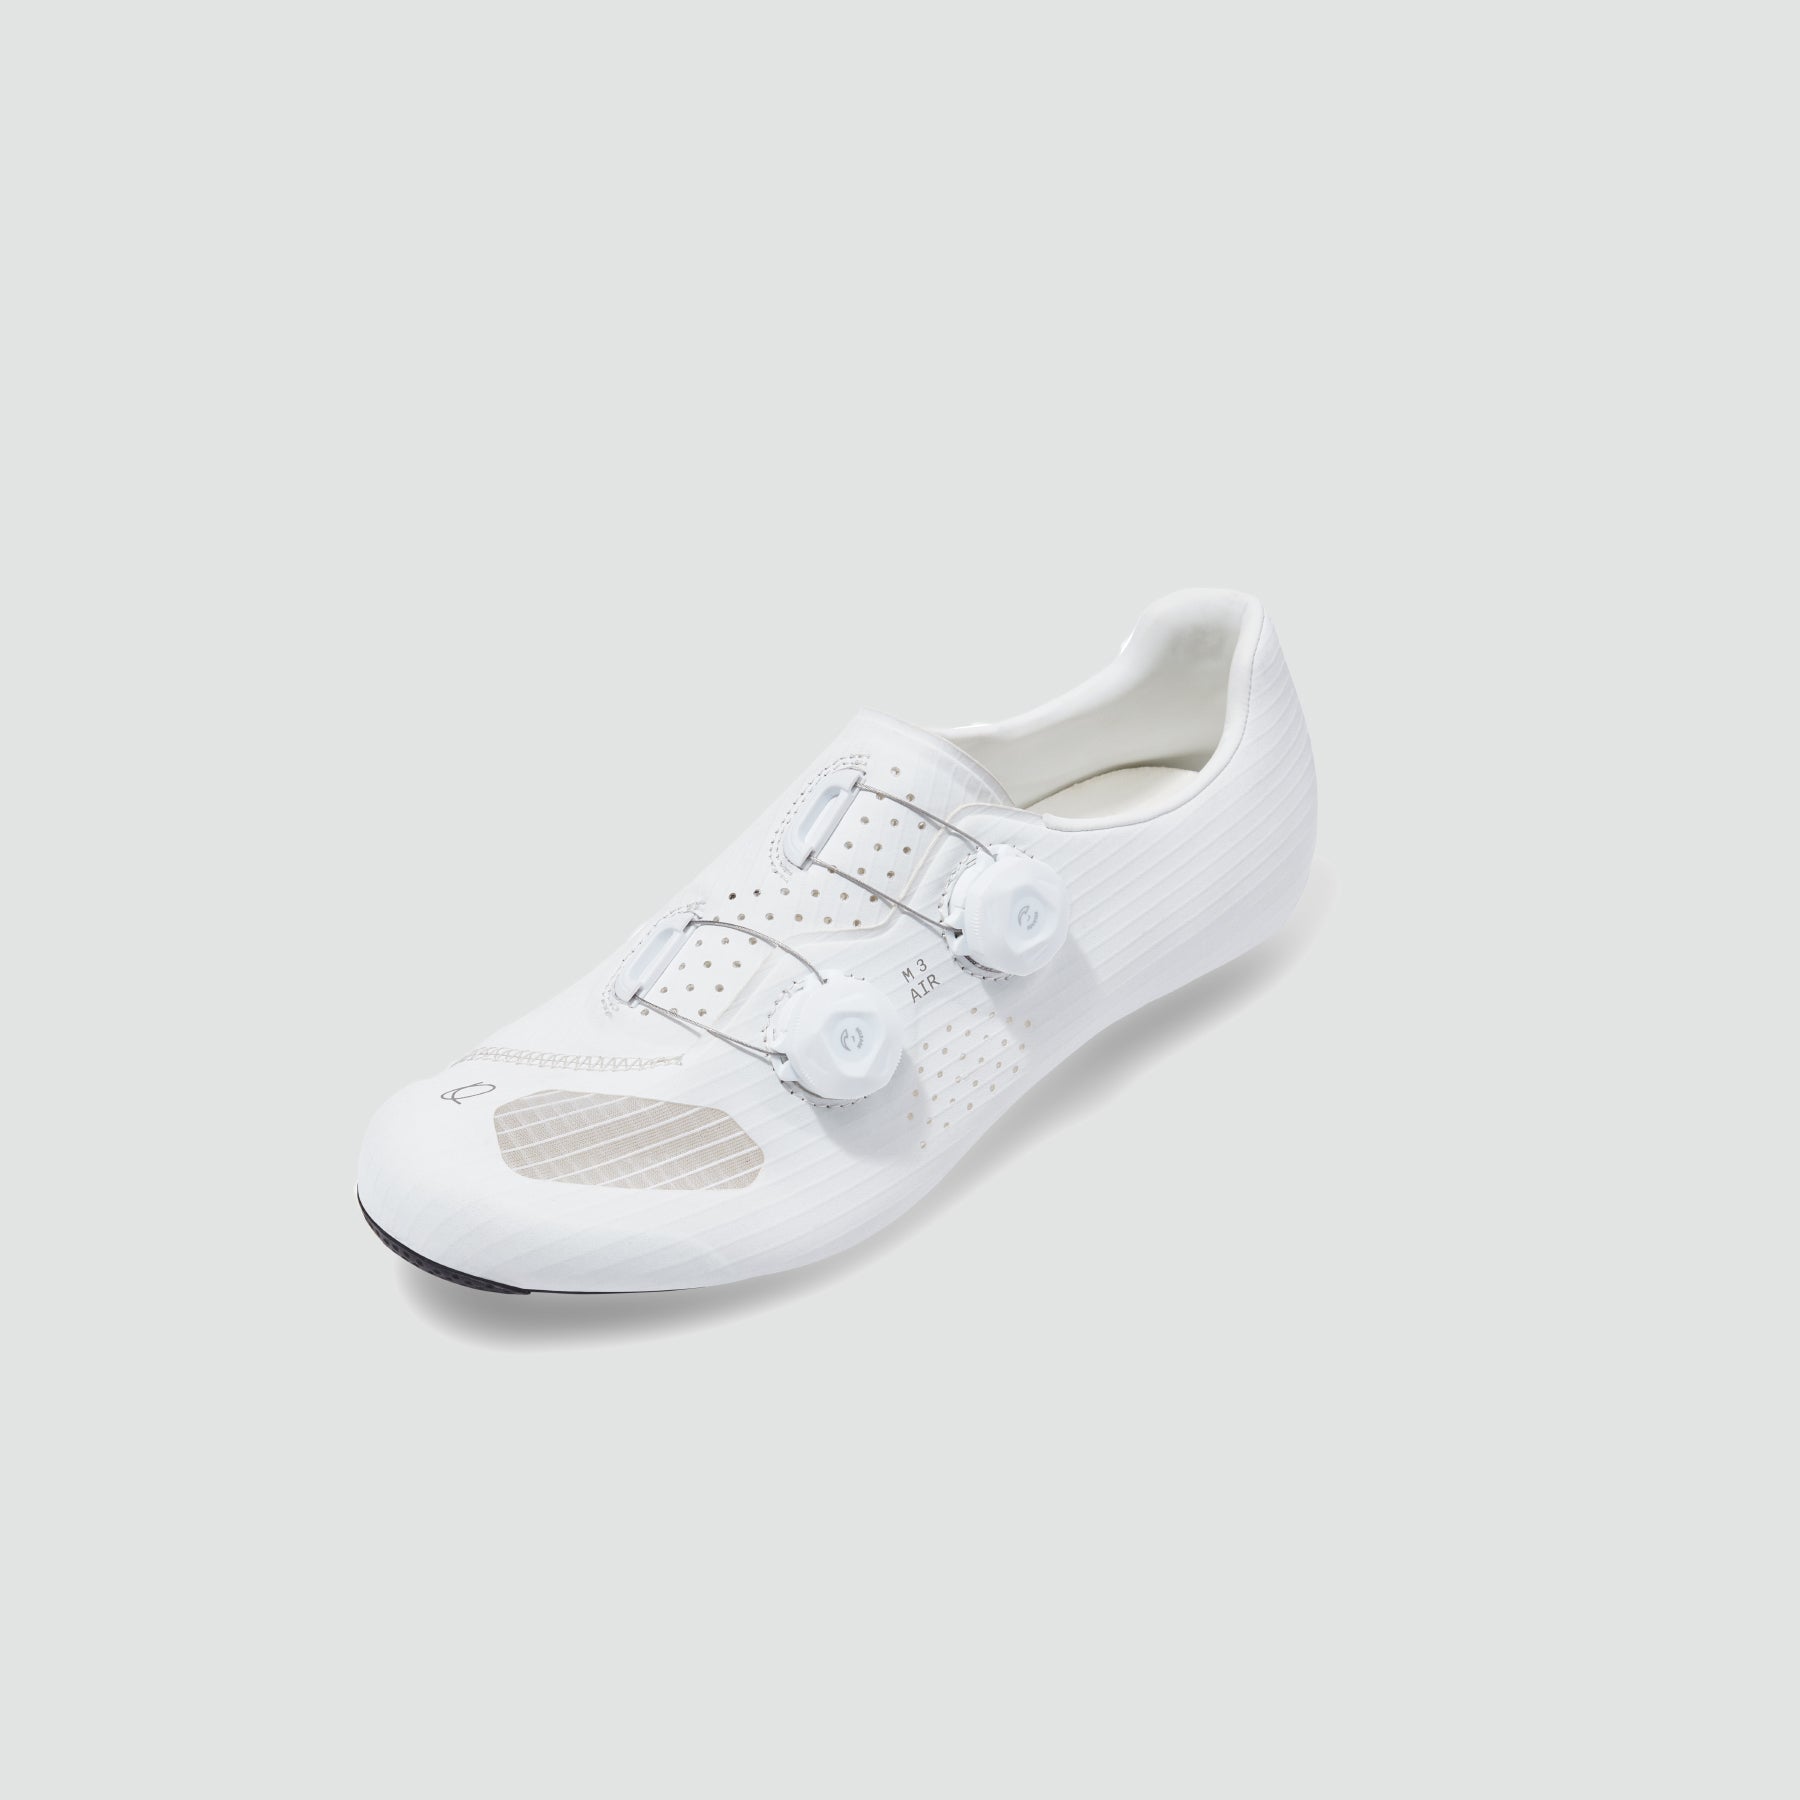 M3 Air Shoes - White